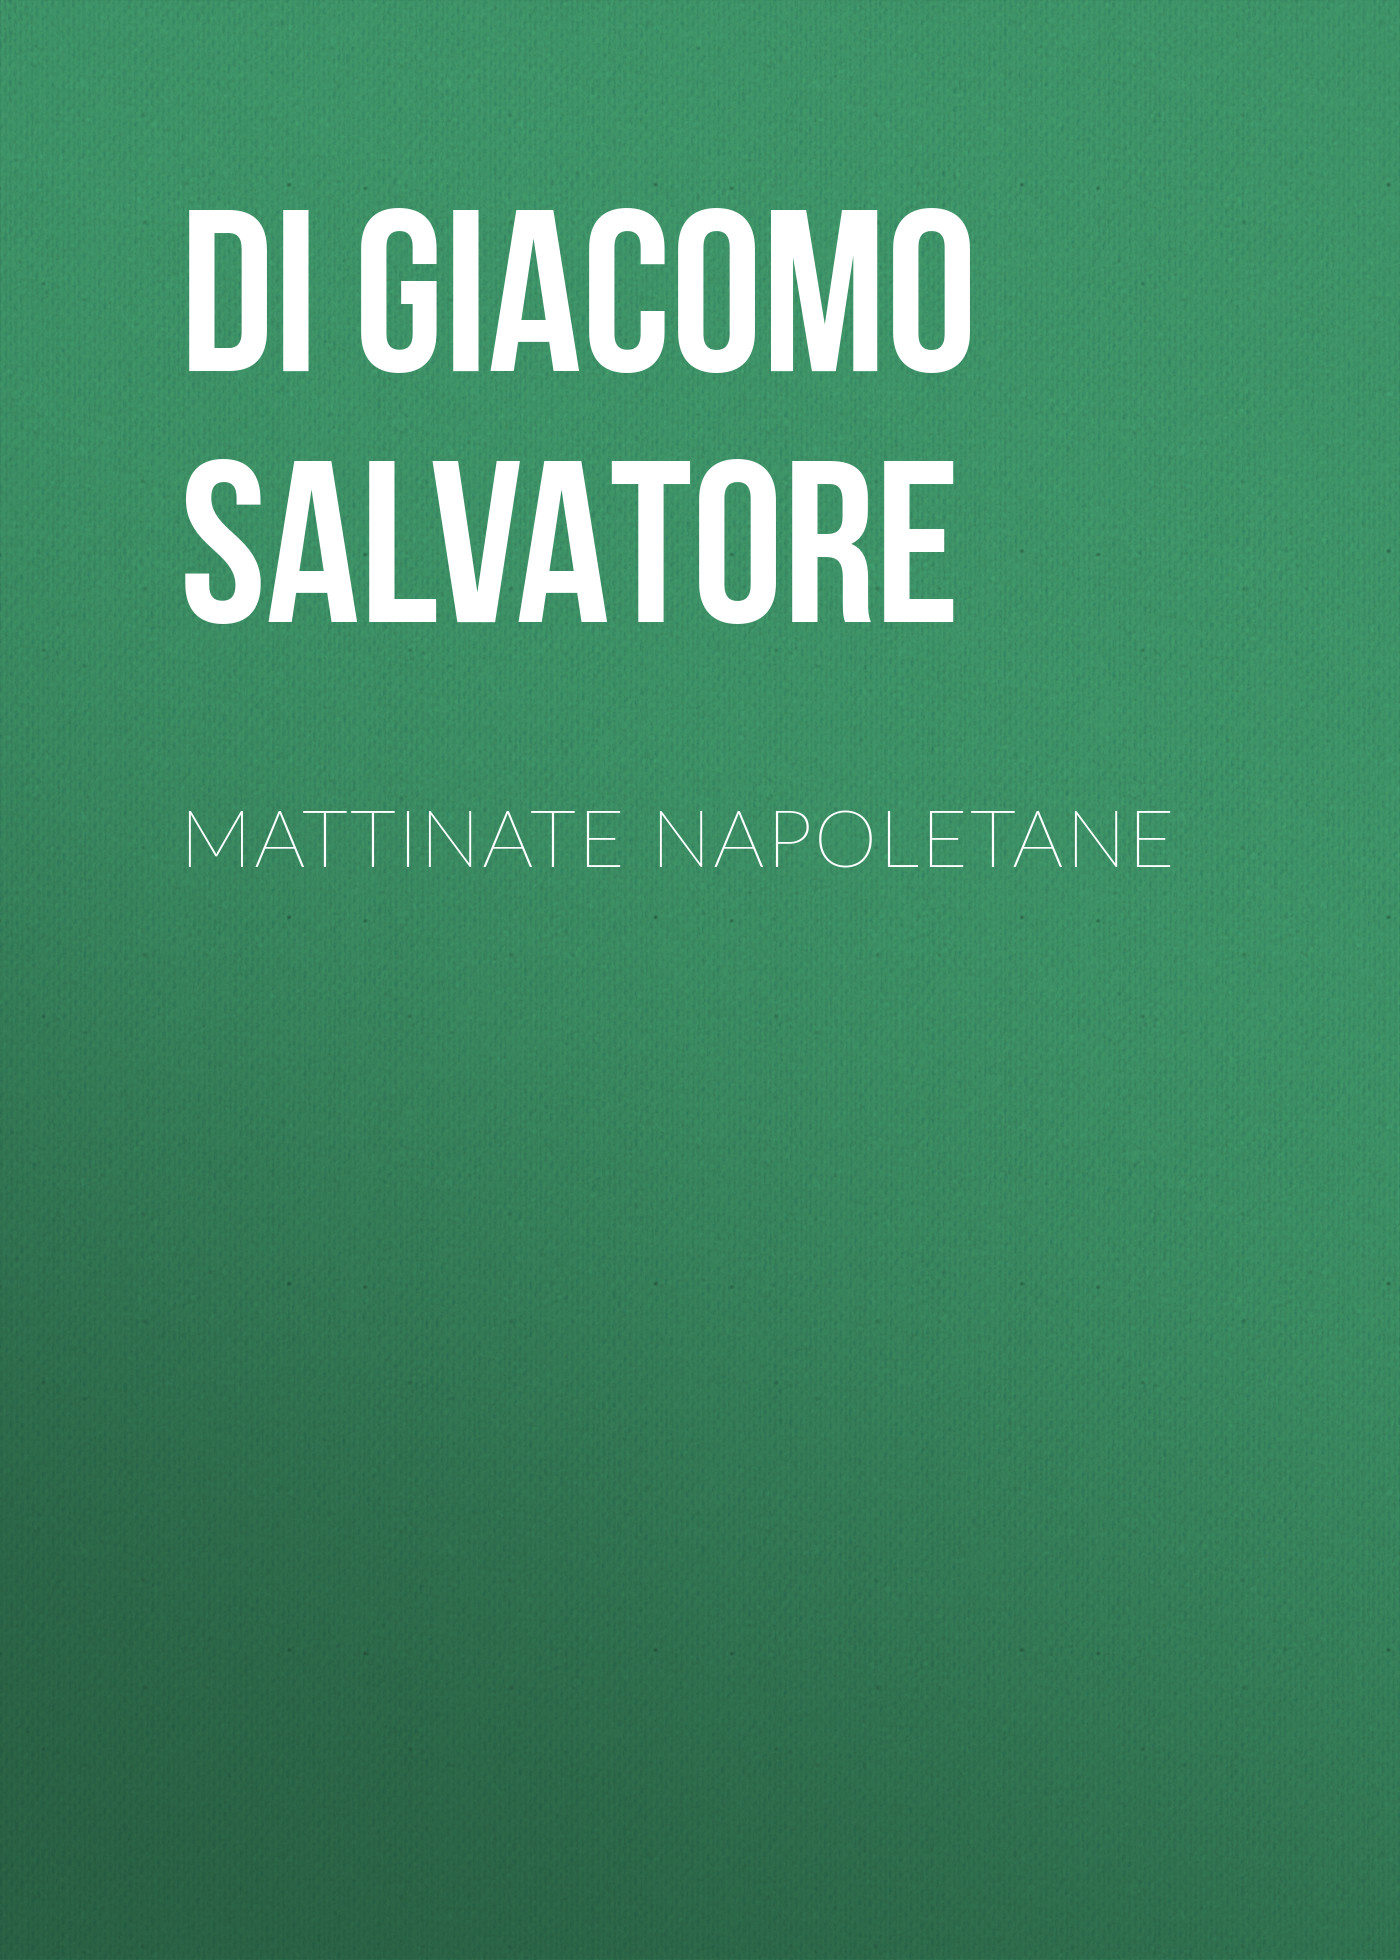 Книга Mattinate napoletane из серии , созданная Salvatore Di Giacomo, может относится к жанру Зарубежная старинная литература, Зарубежная классика, Рассказы. Стоимость электронной книги Mattinate napoletane с идентификатором 24548180 составляет 0 руб.